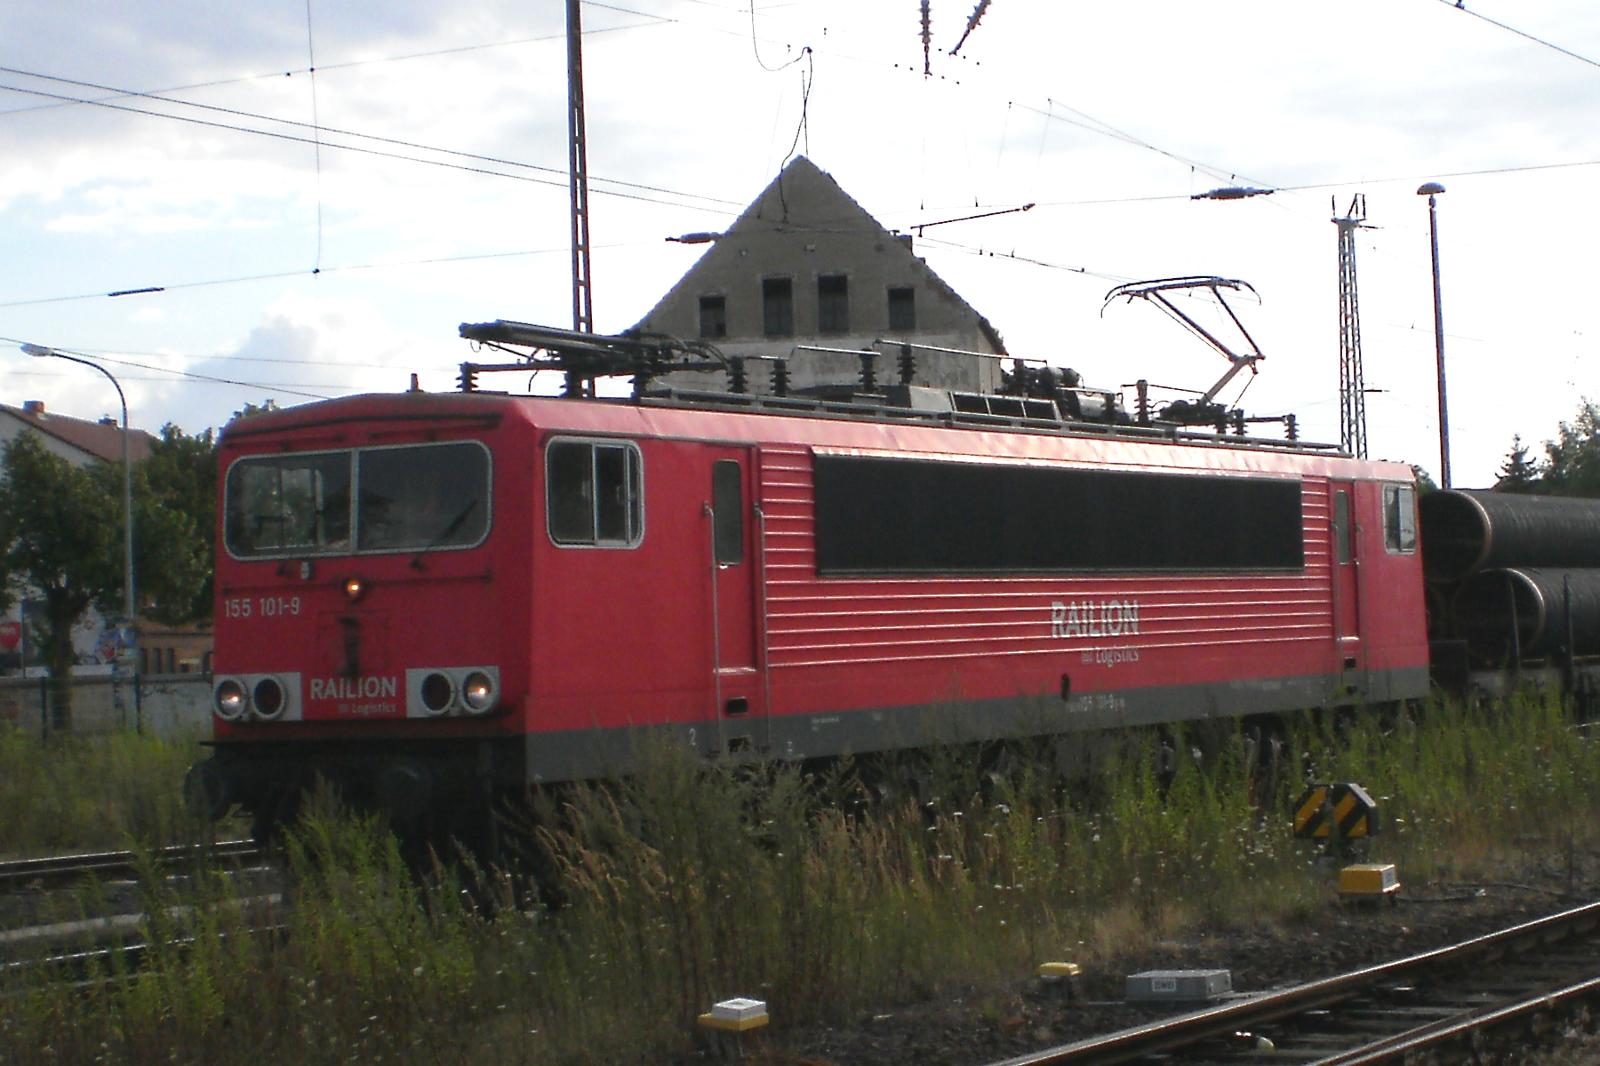 Bahnhof Stendal 29.07.2010, 155 101-9 